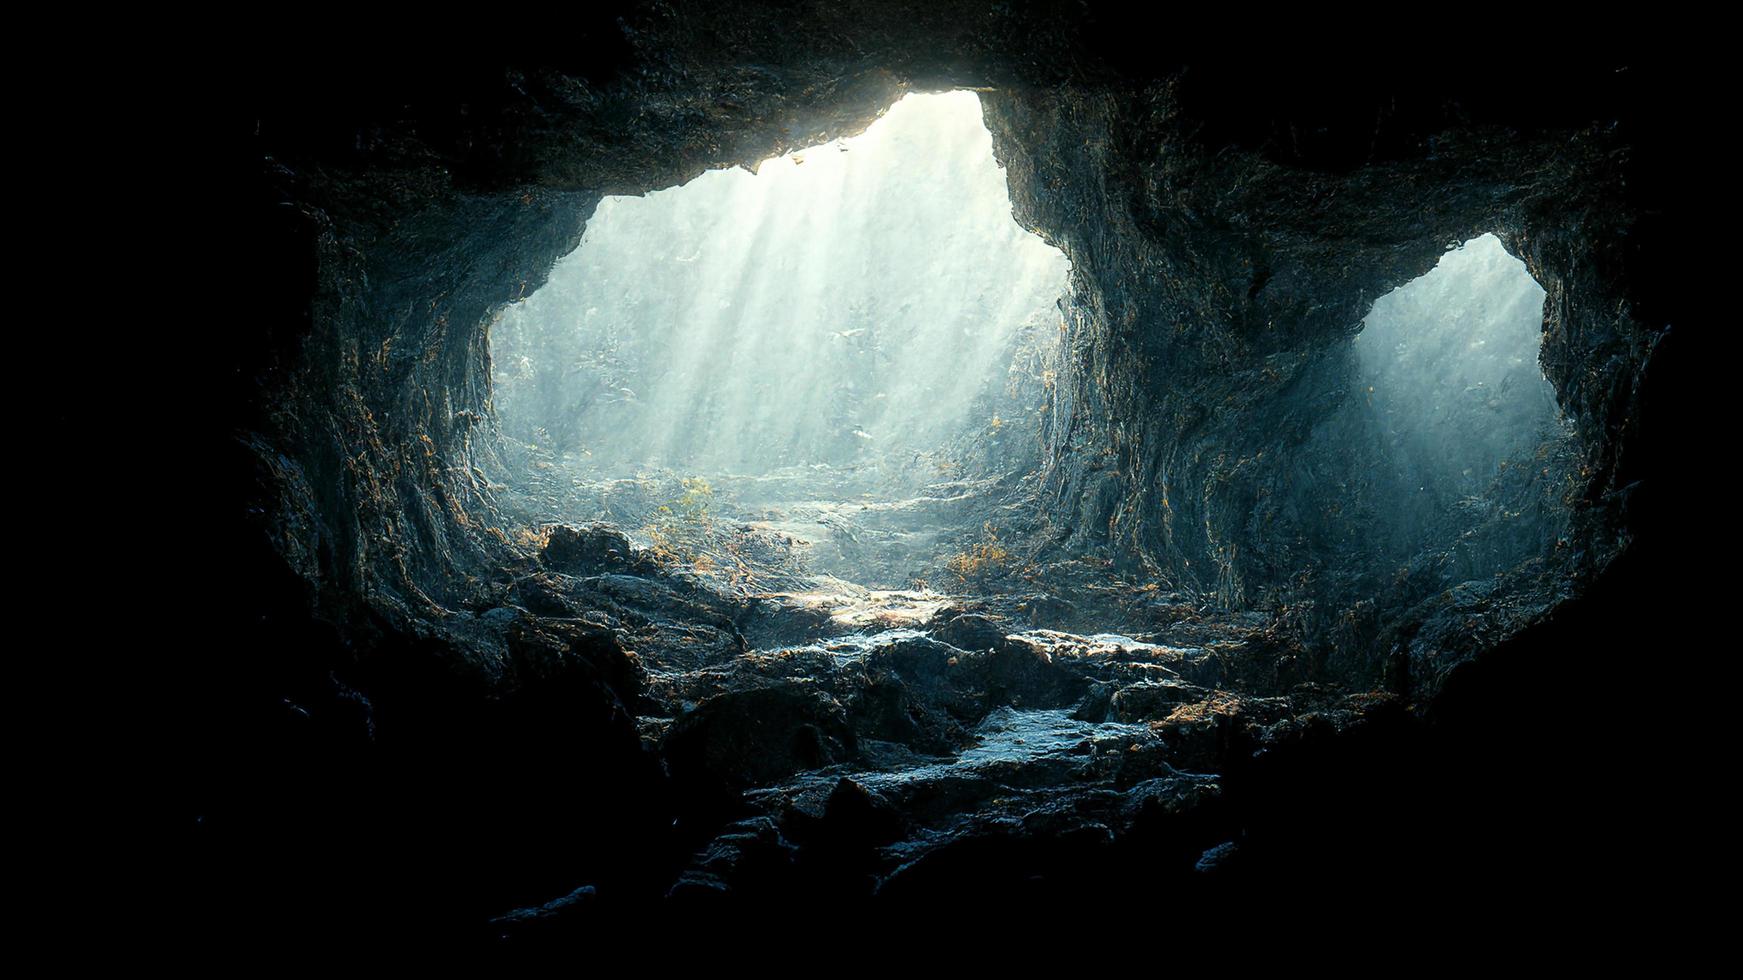 luz dramática na paisagem da caverna escura, misteriosa e surreal, arte digital foto